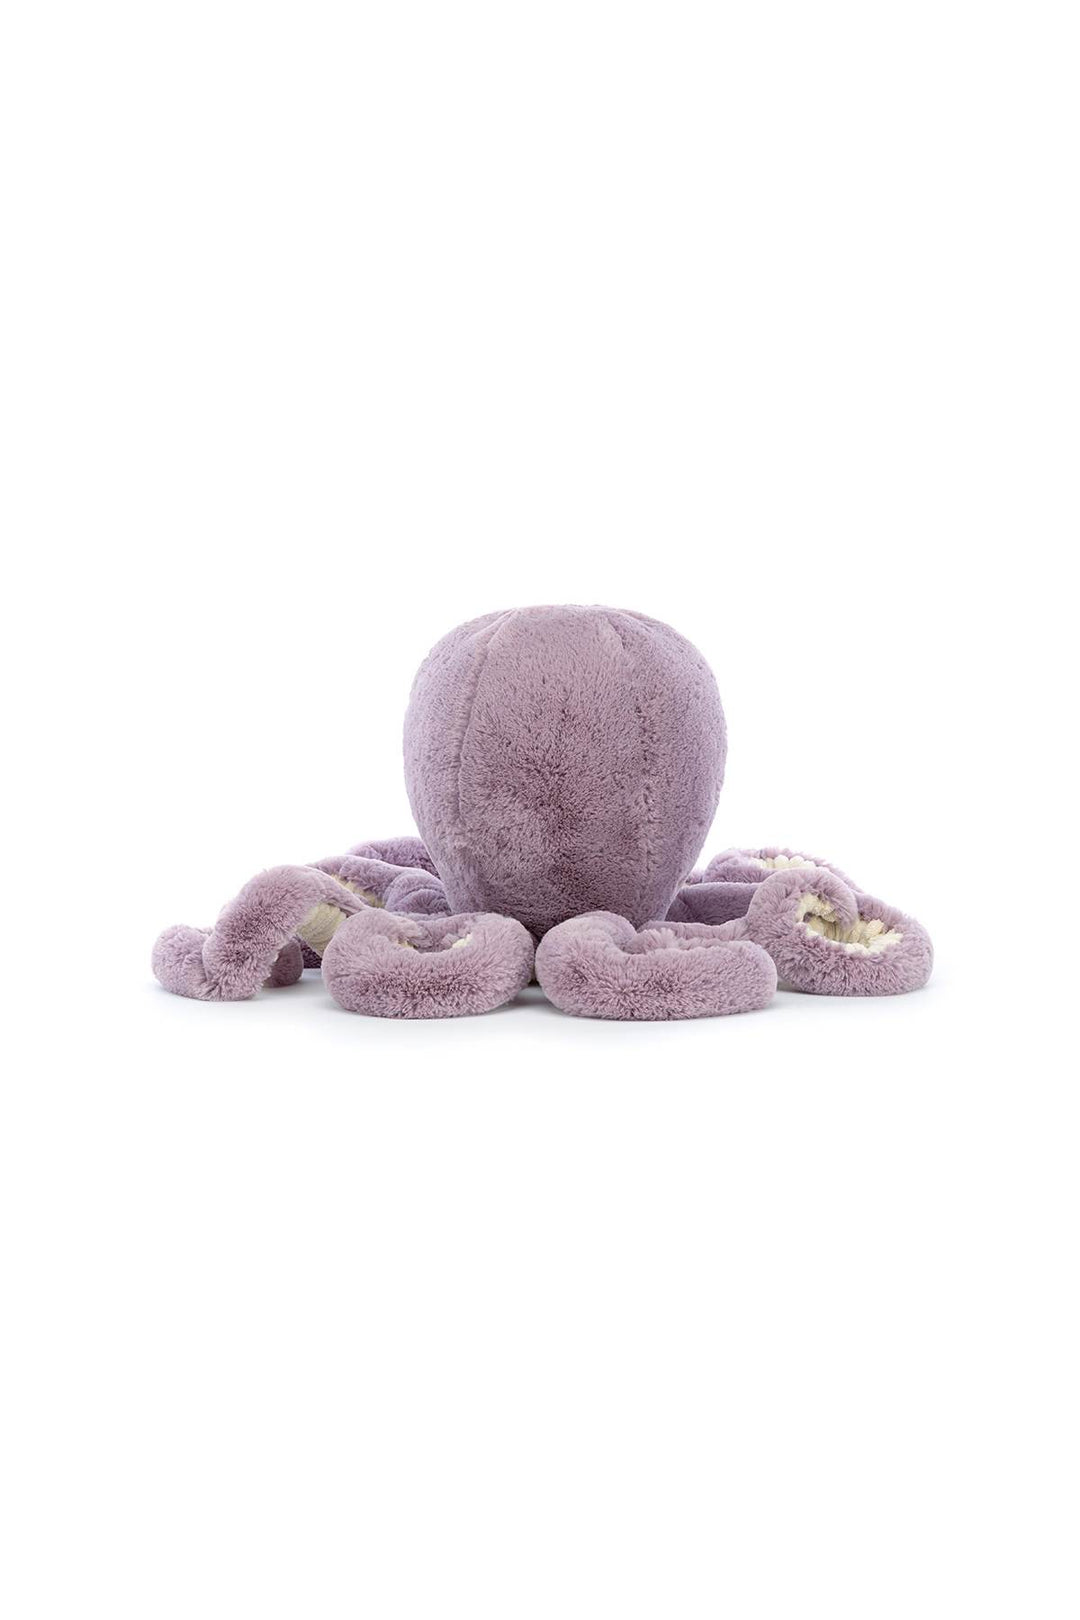 maya octopus large-2